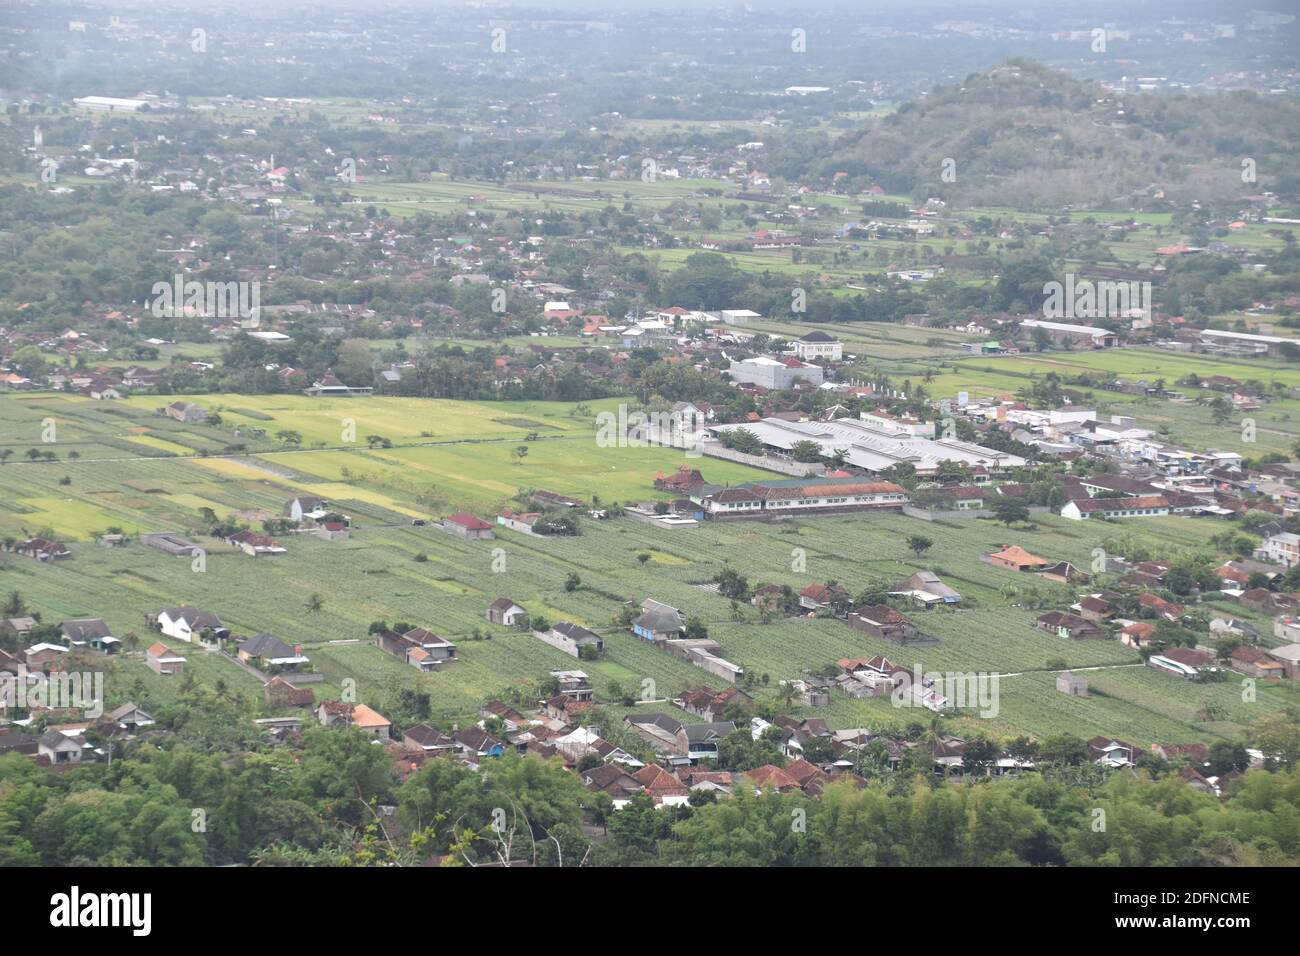 view of Yogyakarta from above Stock Photo